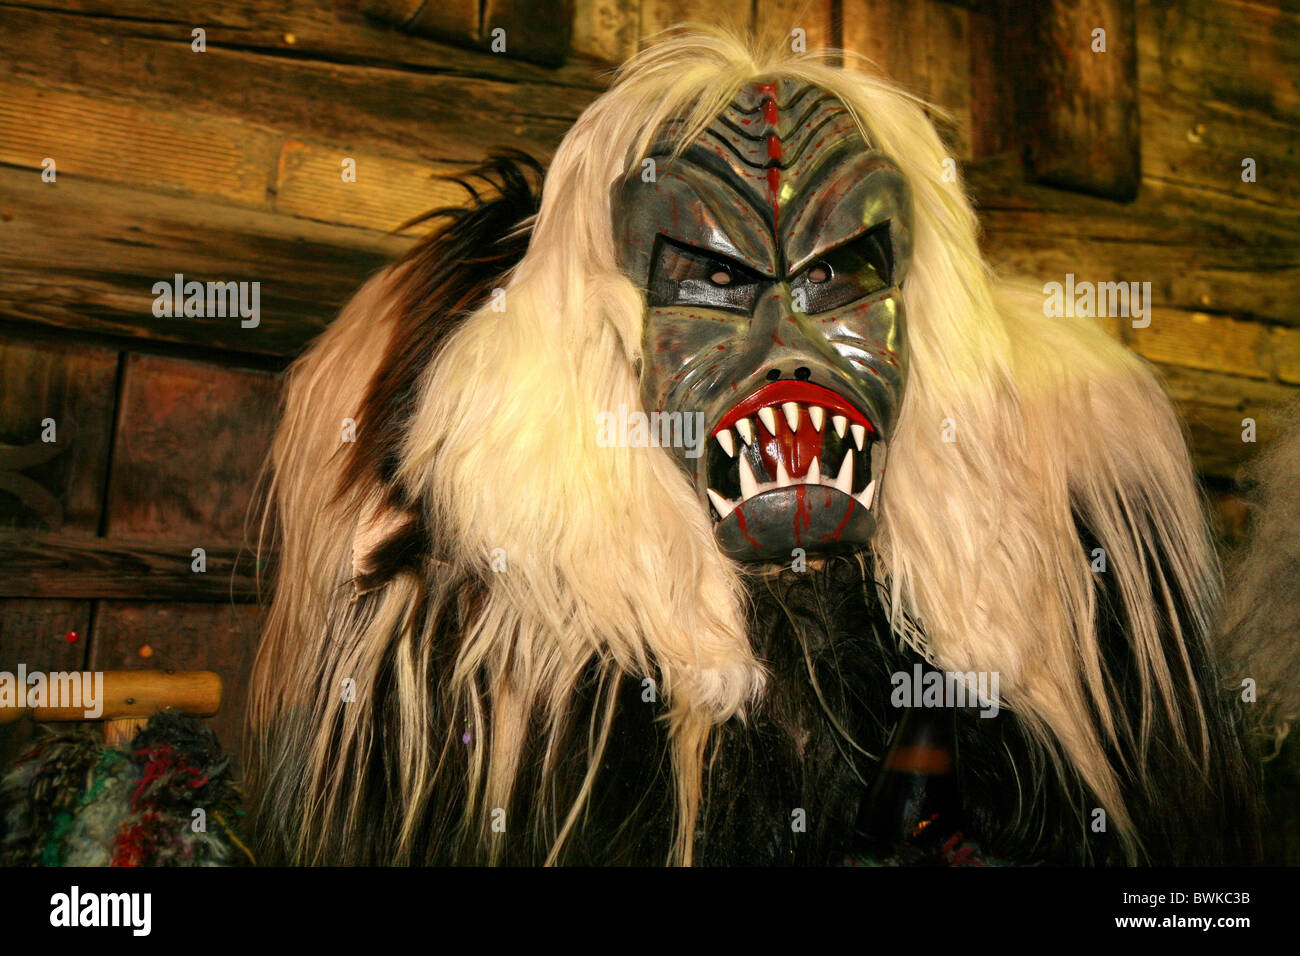 Costume national masque personnalisé personnalisé déguisement Fancy Dress Carnival carnaval des masques en bois Roit Roitschaggata Banque D'Images